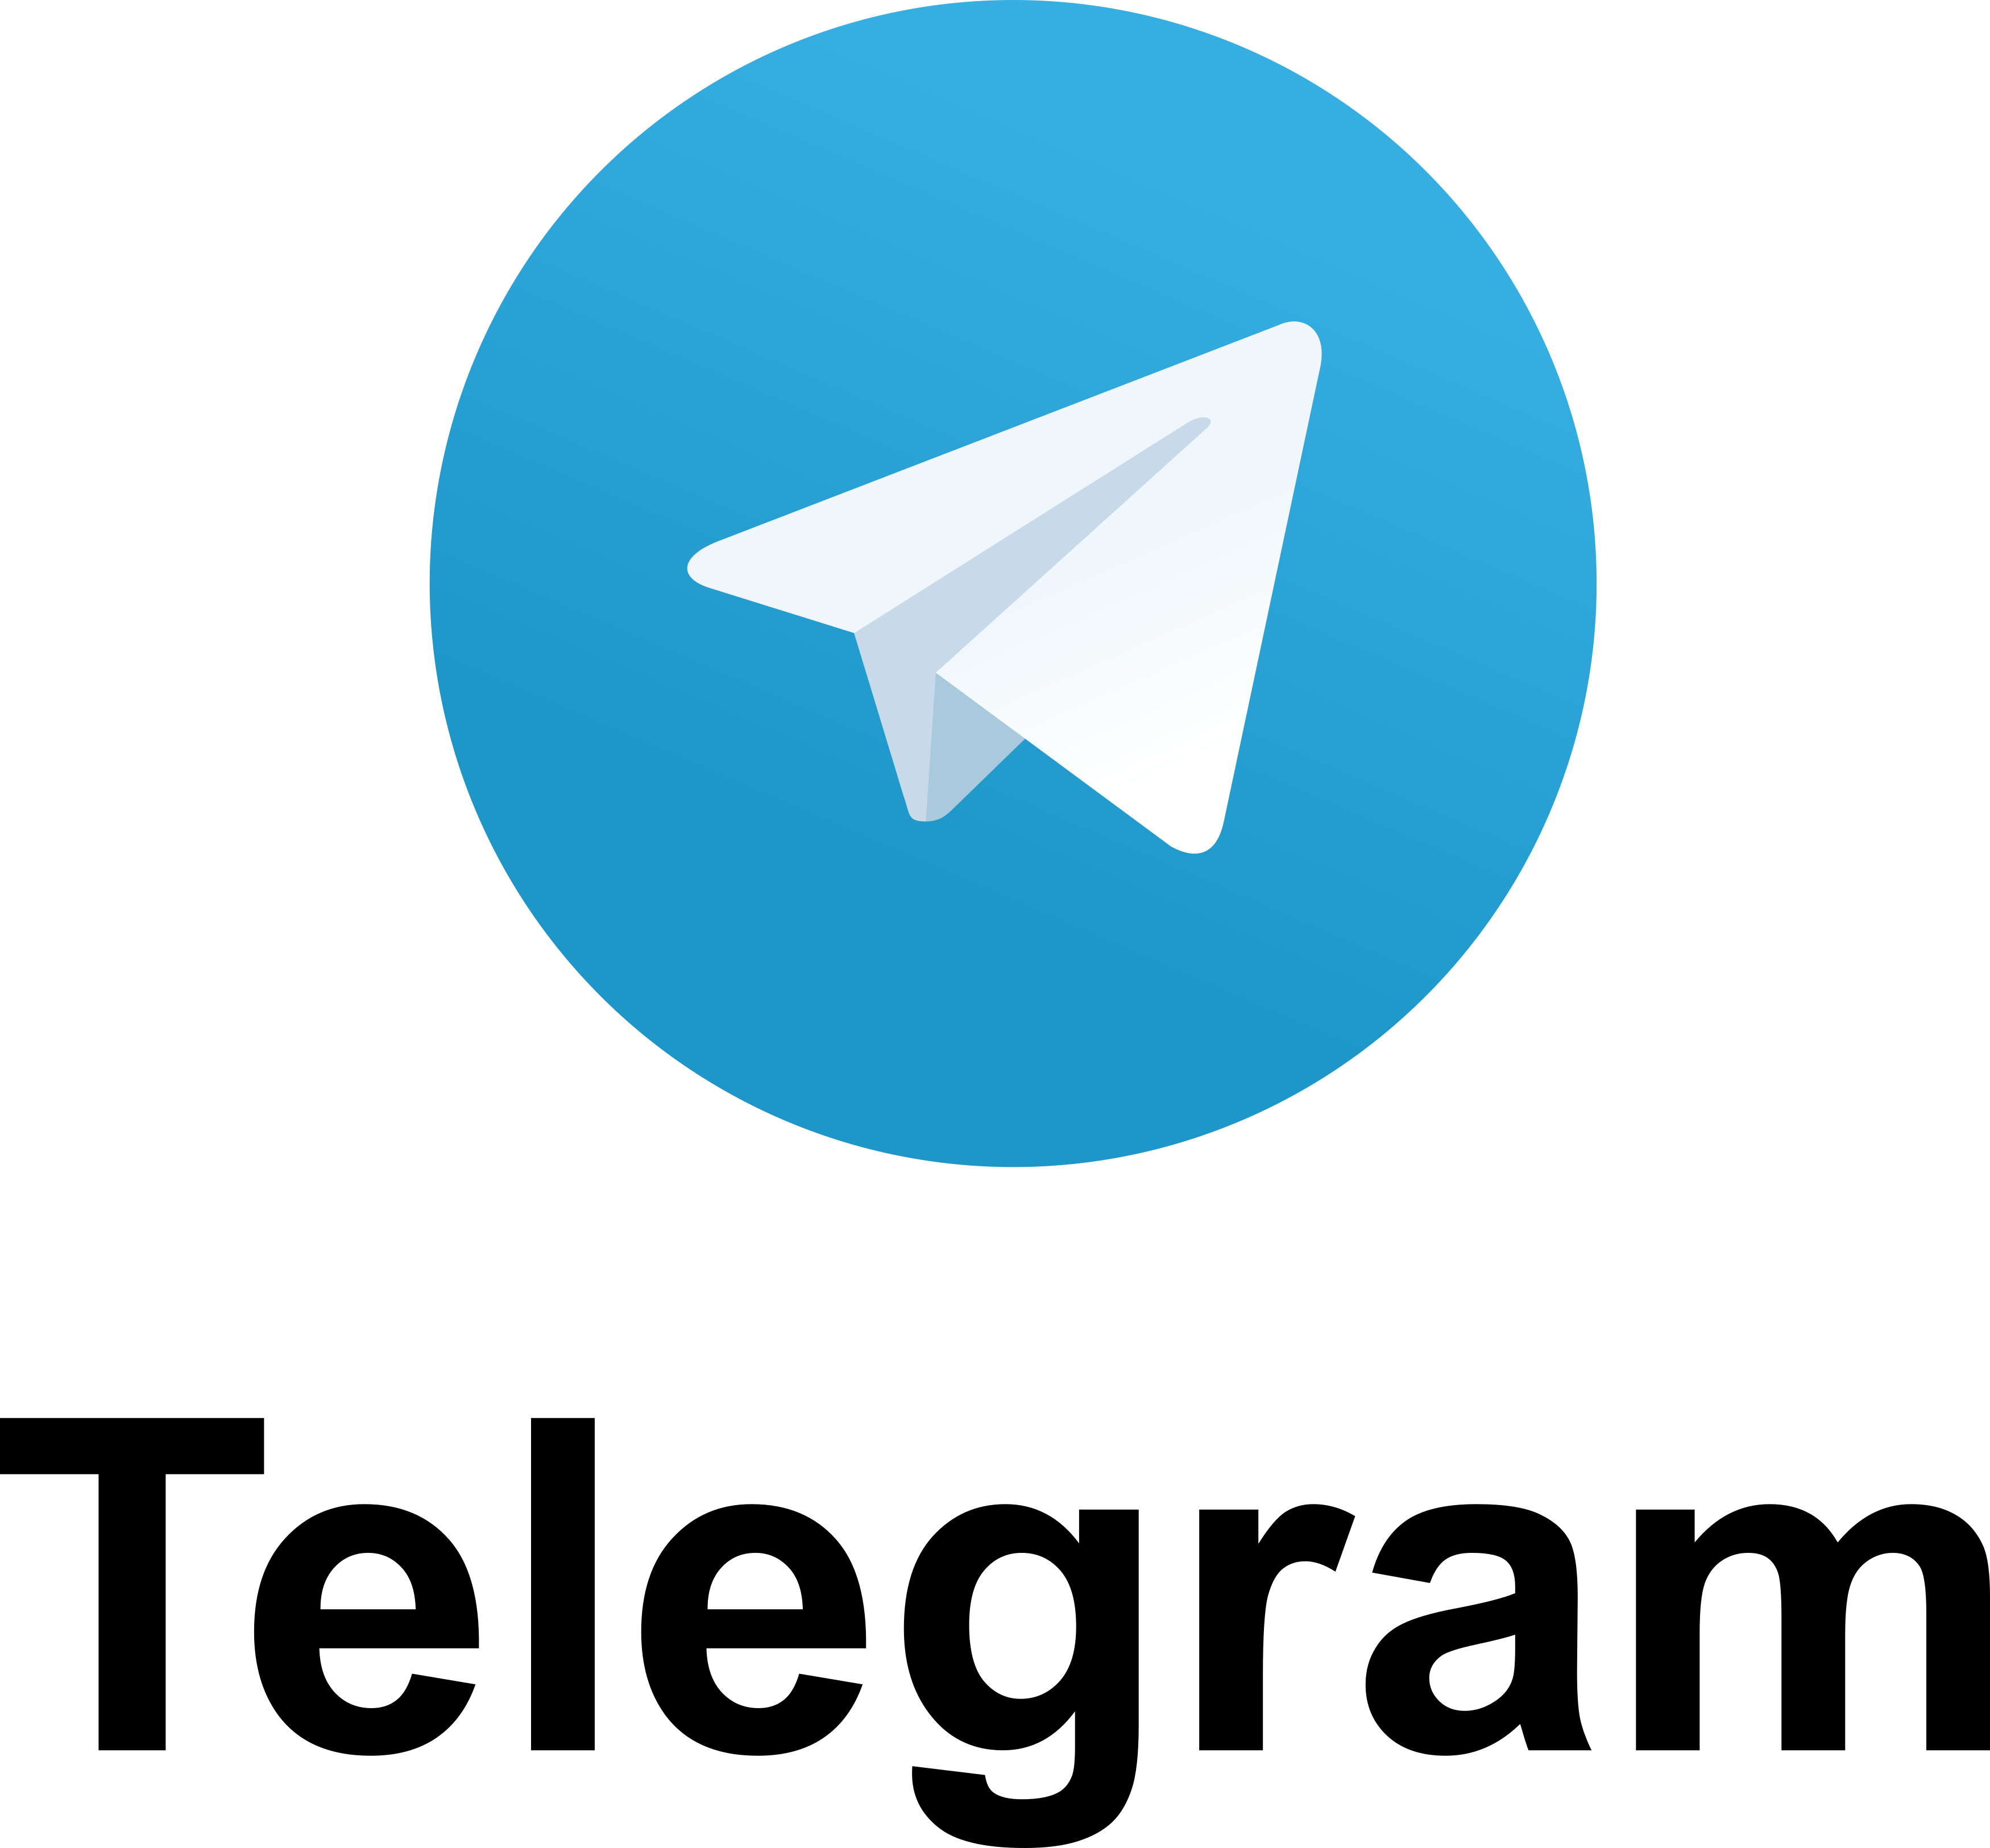 Telegram PNG image free Download 